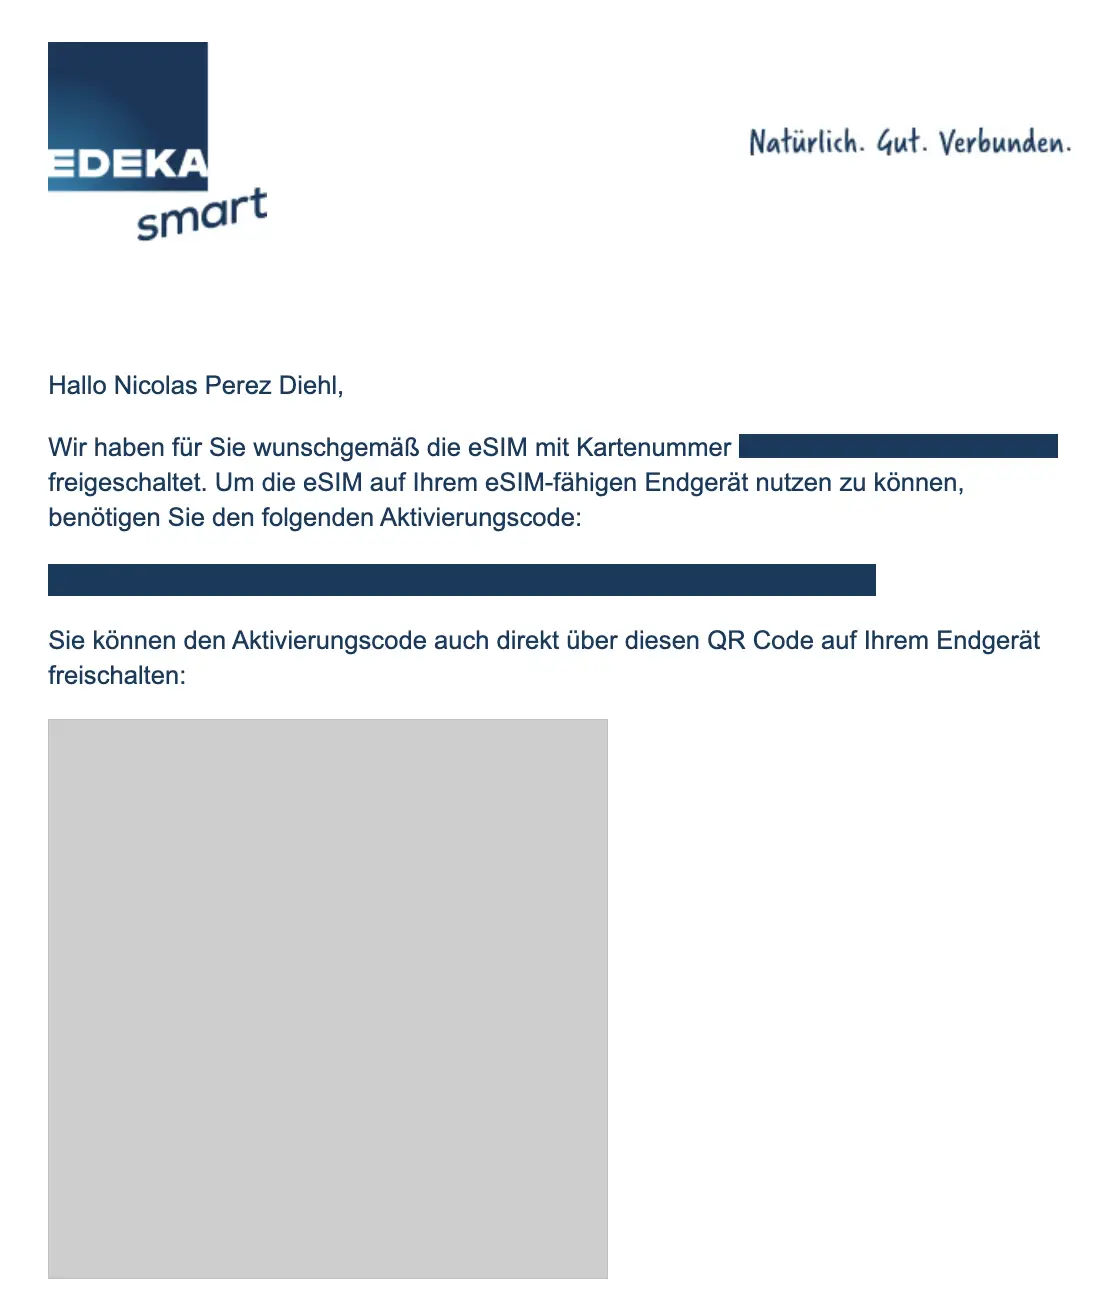 EDEKA smart eSIM aktivieren / freischalten (Mail 2)